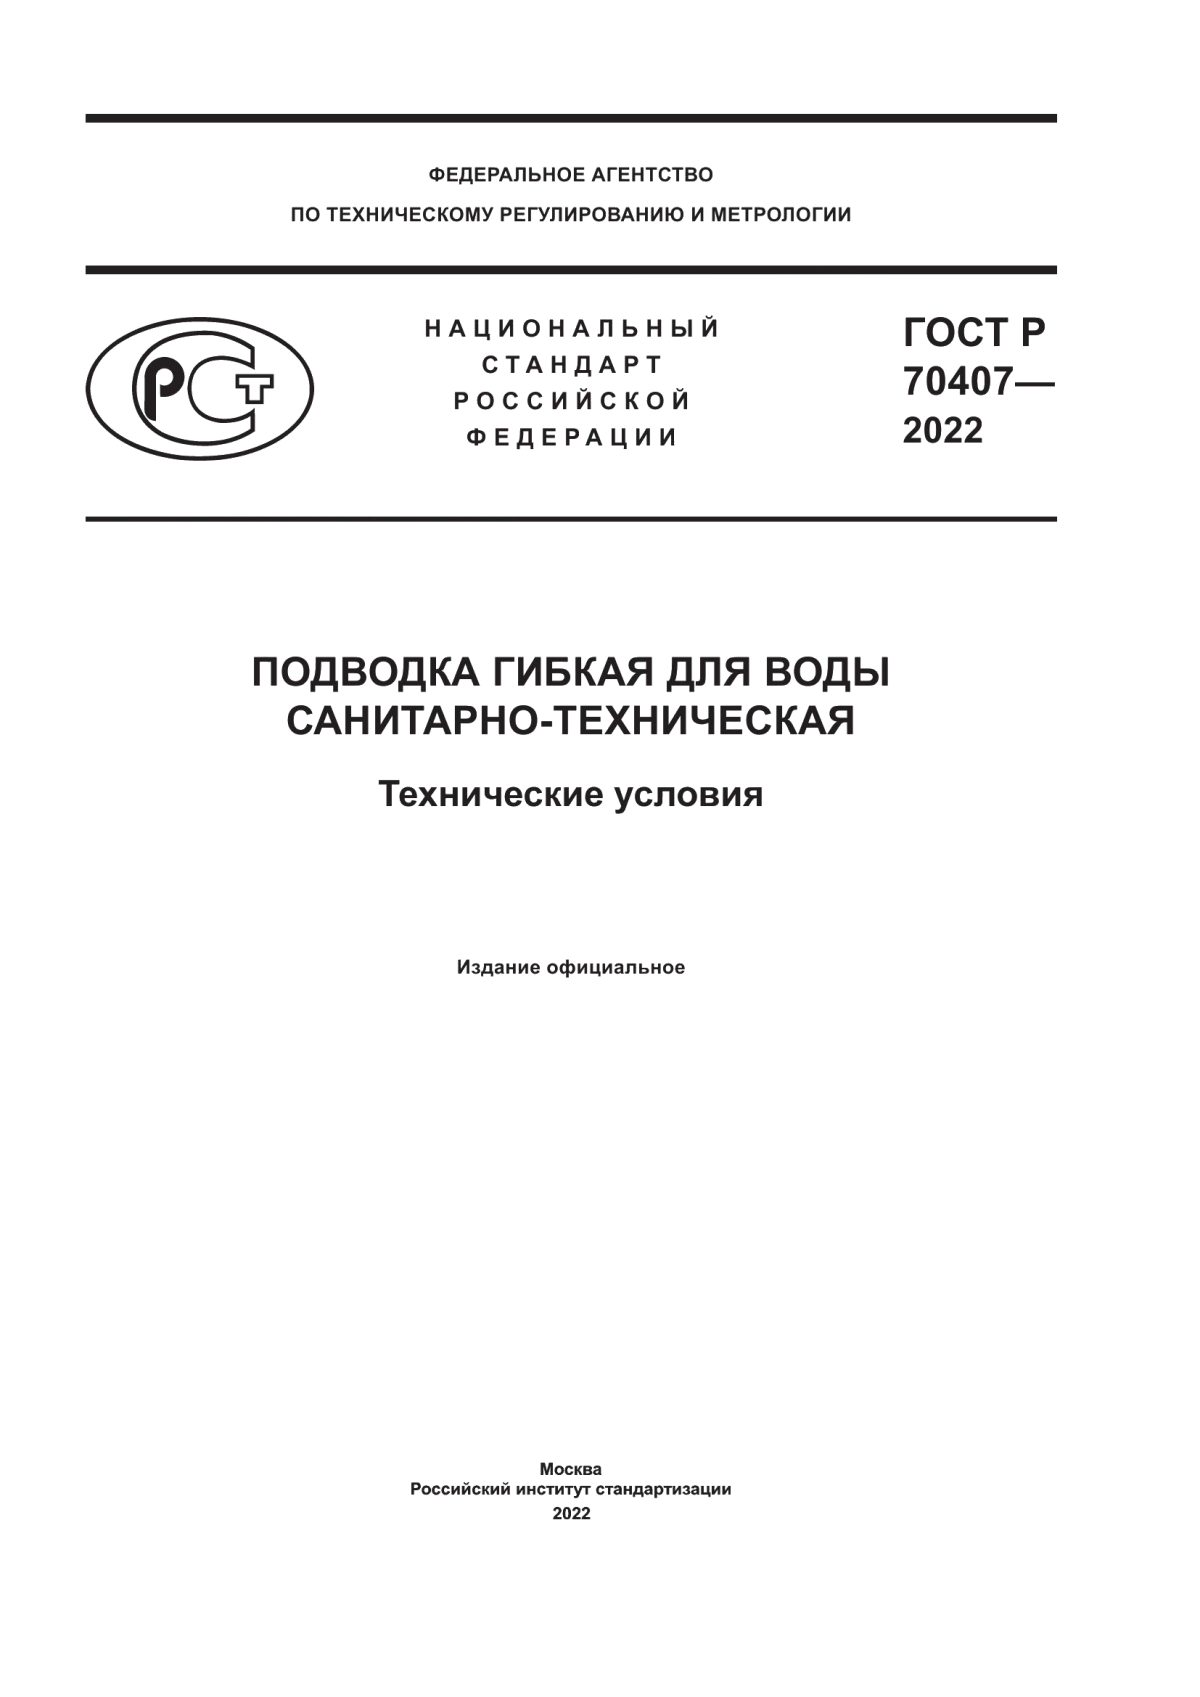 ГОСТ Р 70407-2022 Подводка гибкая для воды санитарно-техническая. Технические условия